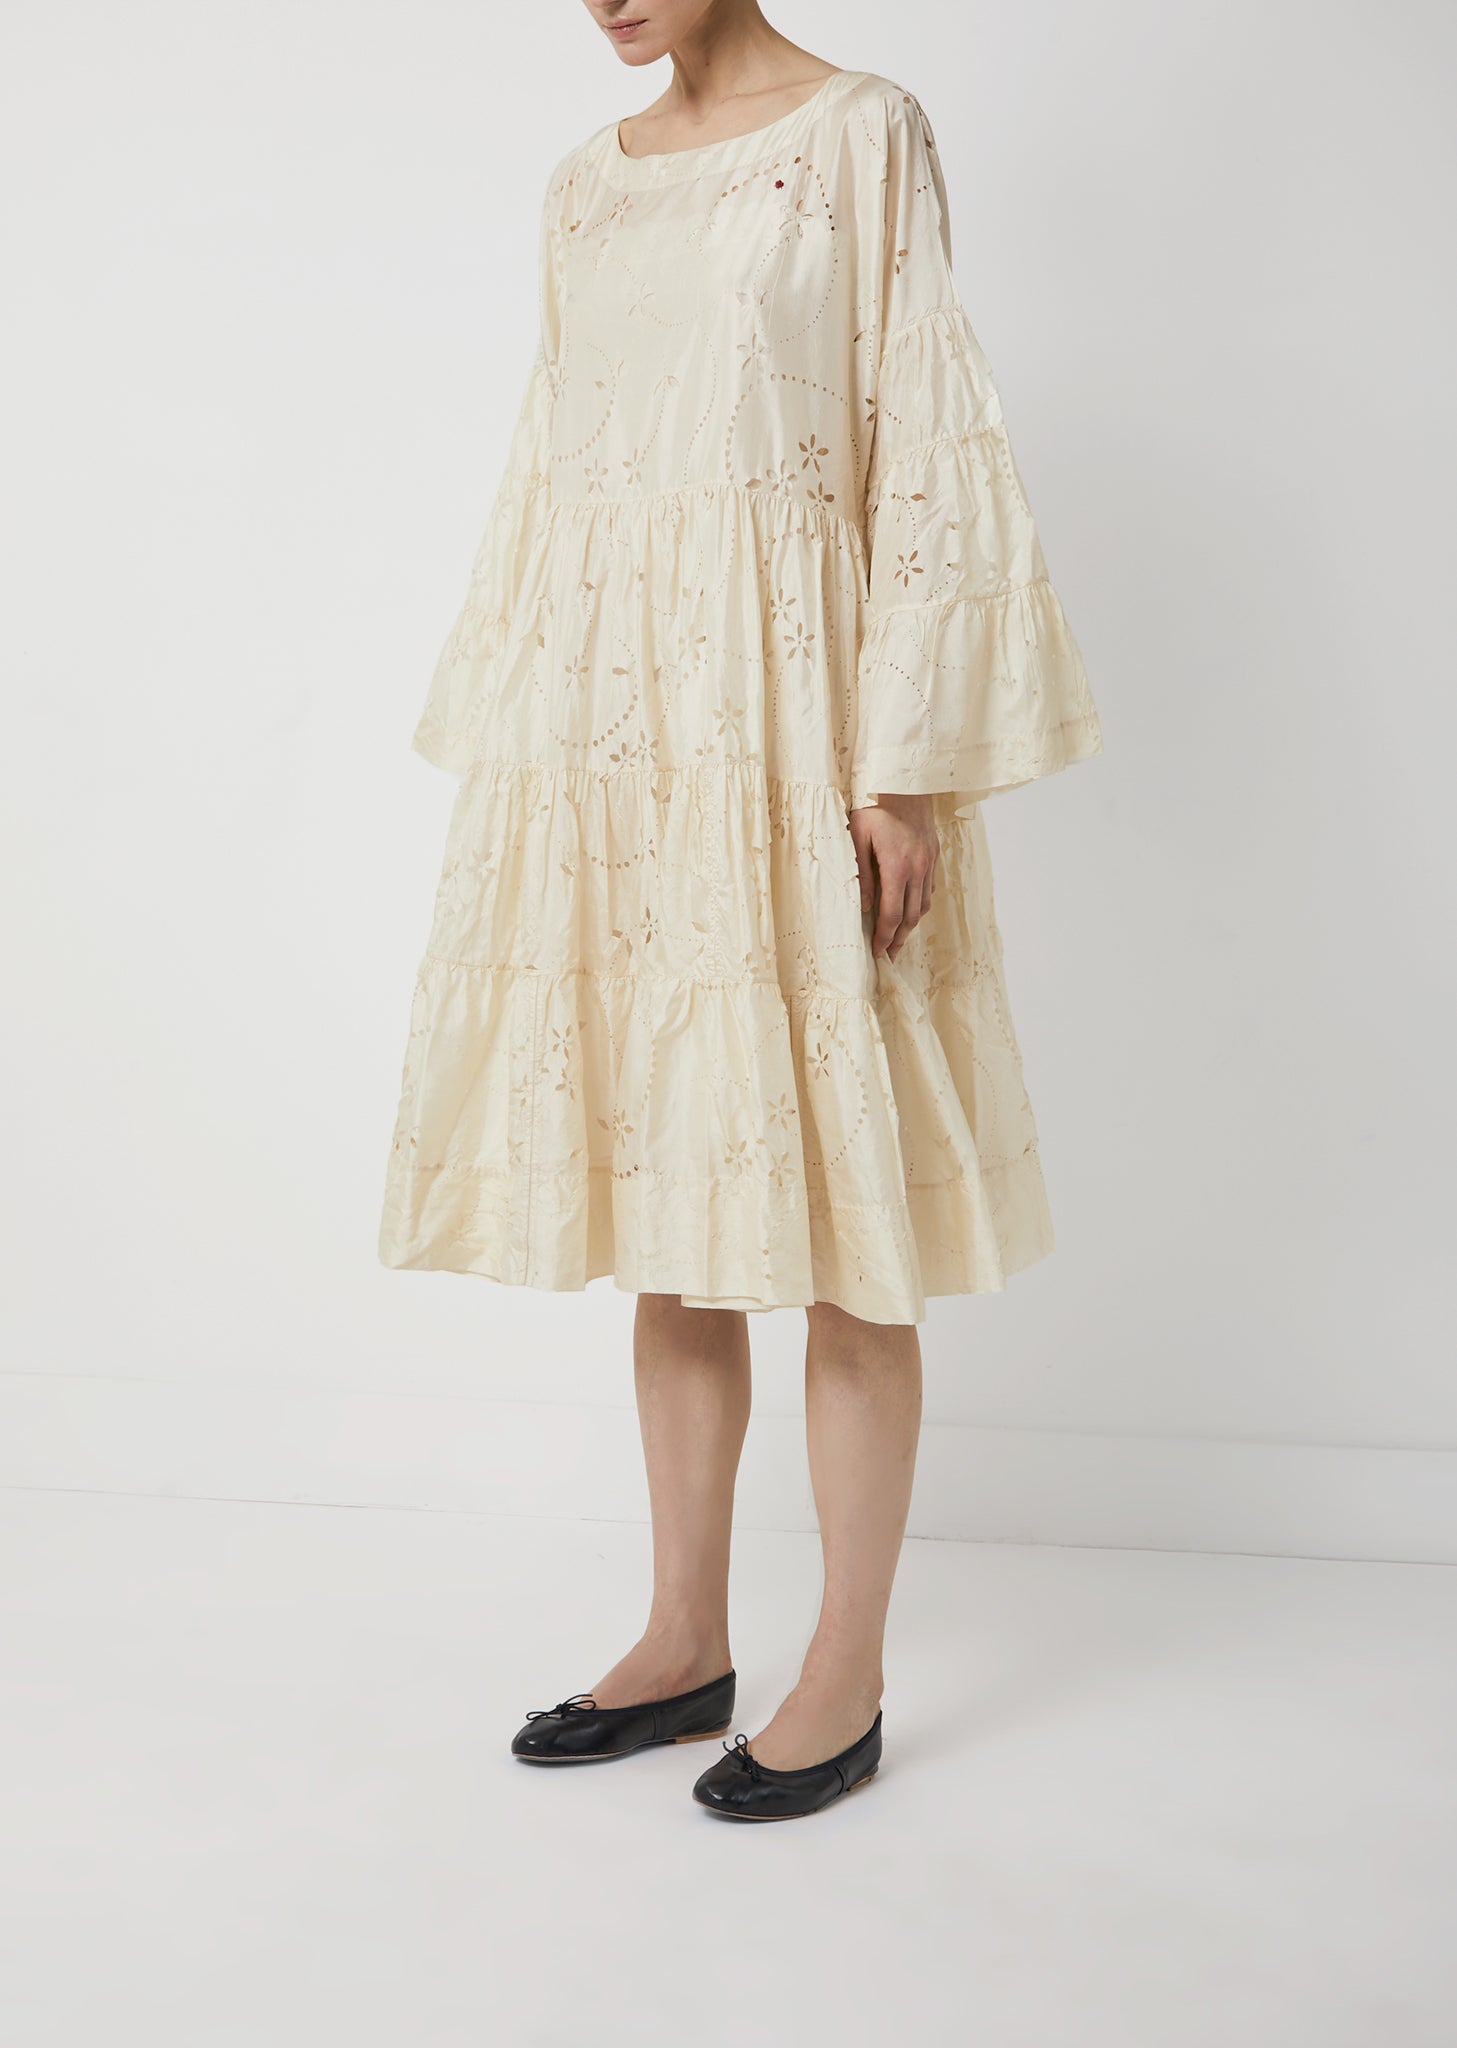 Silk Long Sleeve Tiered Dress by Péro- La Garçonne